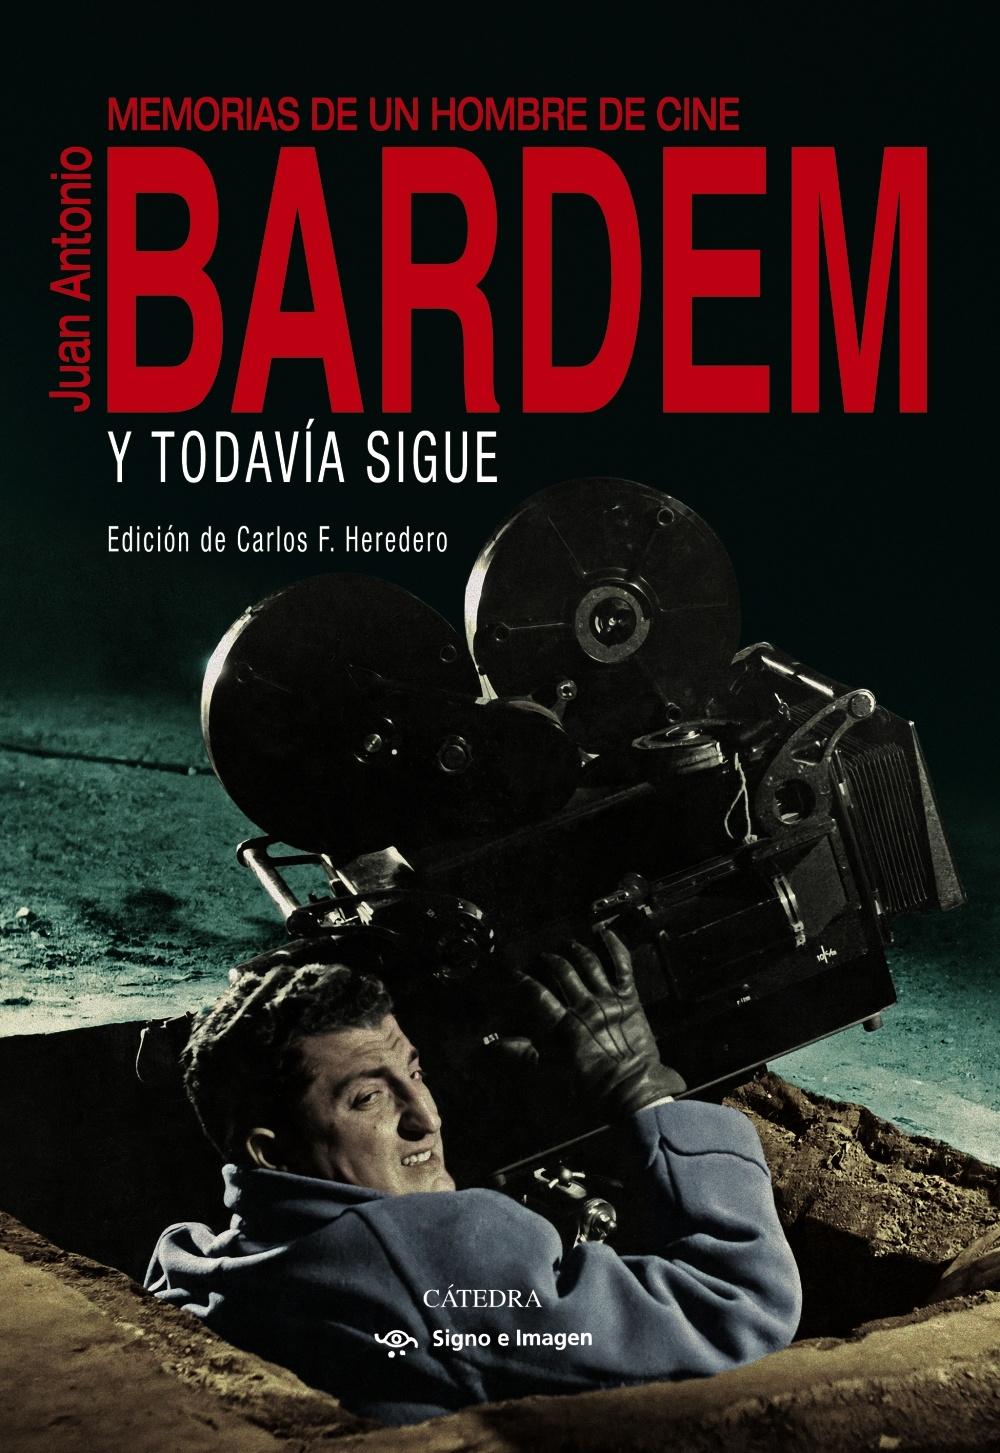 Y Todavía Sigue (Memorias de Juan Antonio Bardem) "Memorias de un Hombre de Cine". 